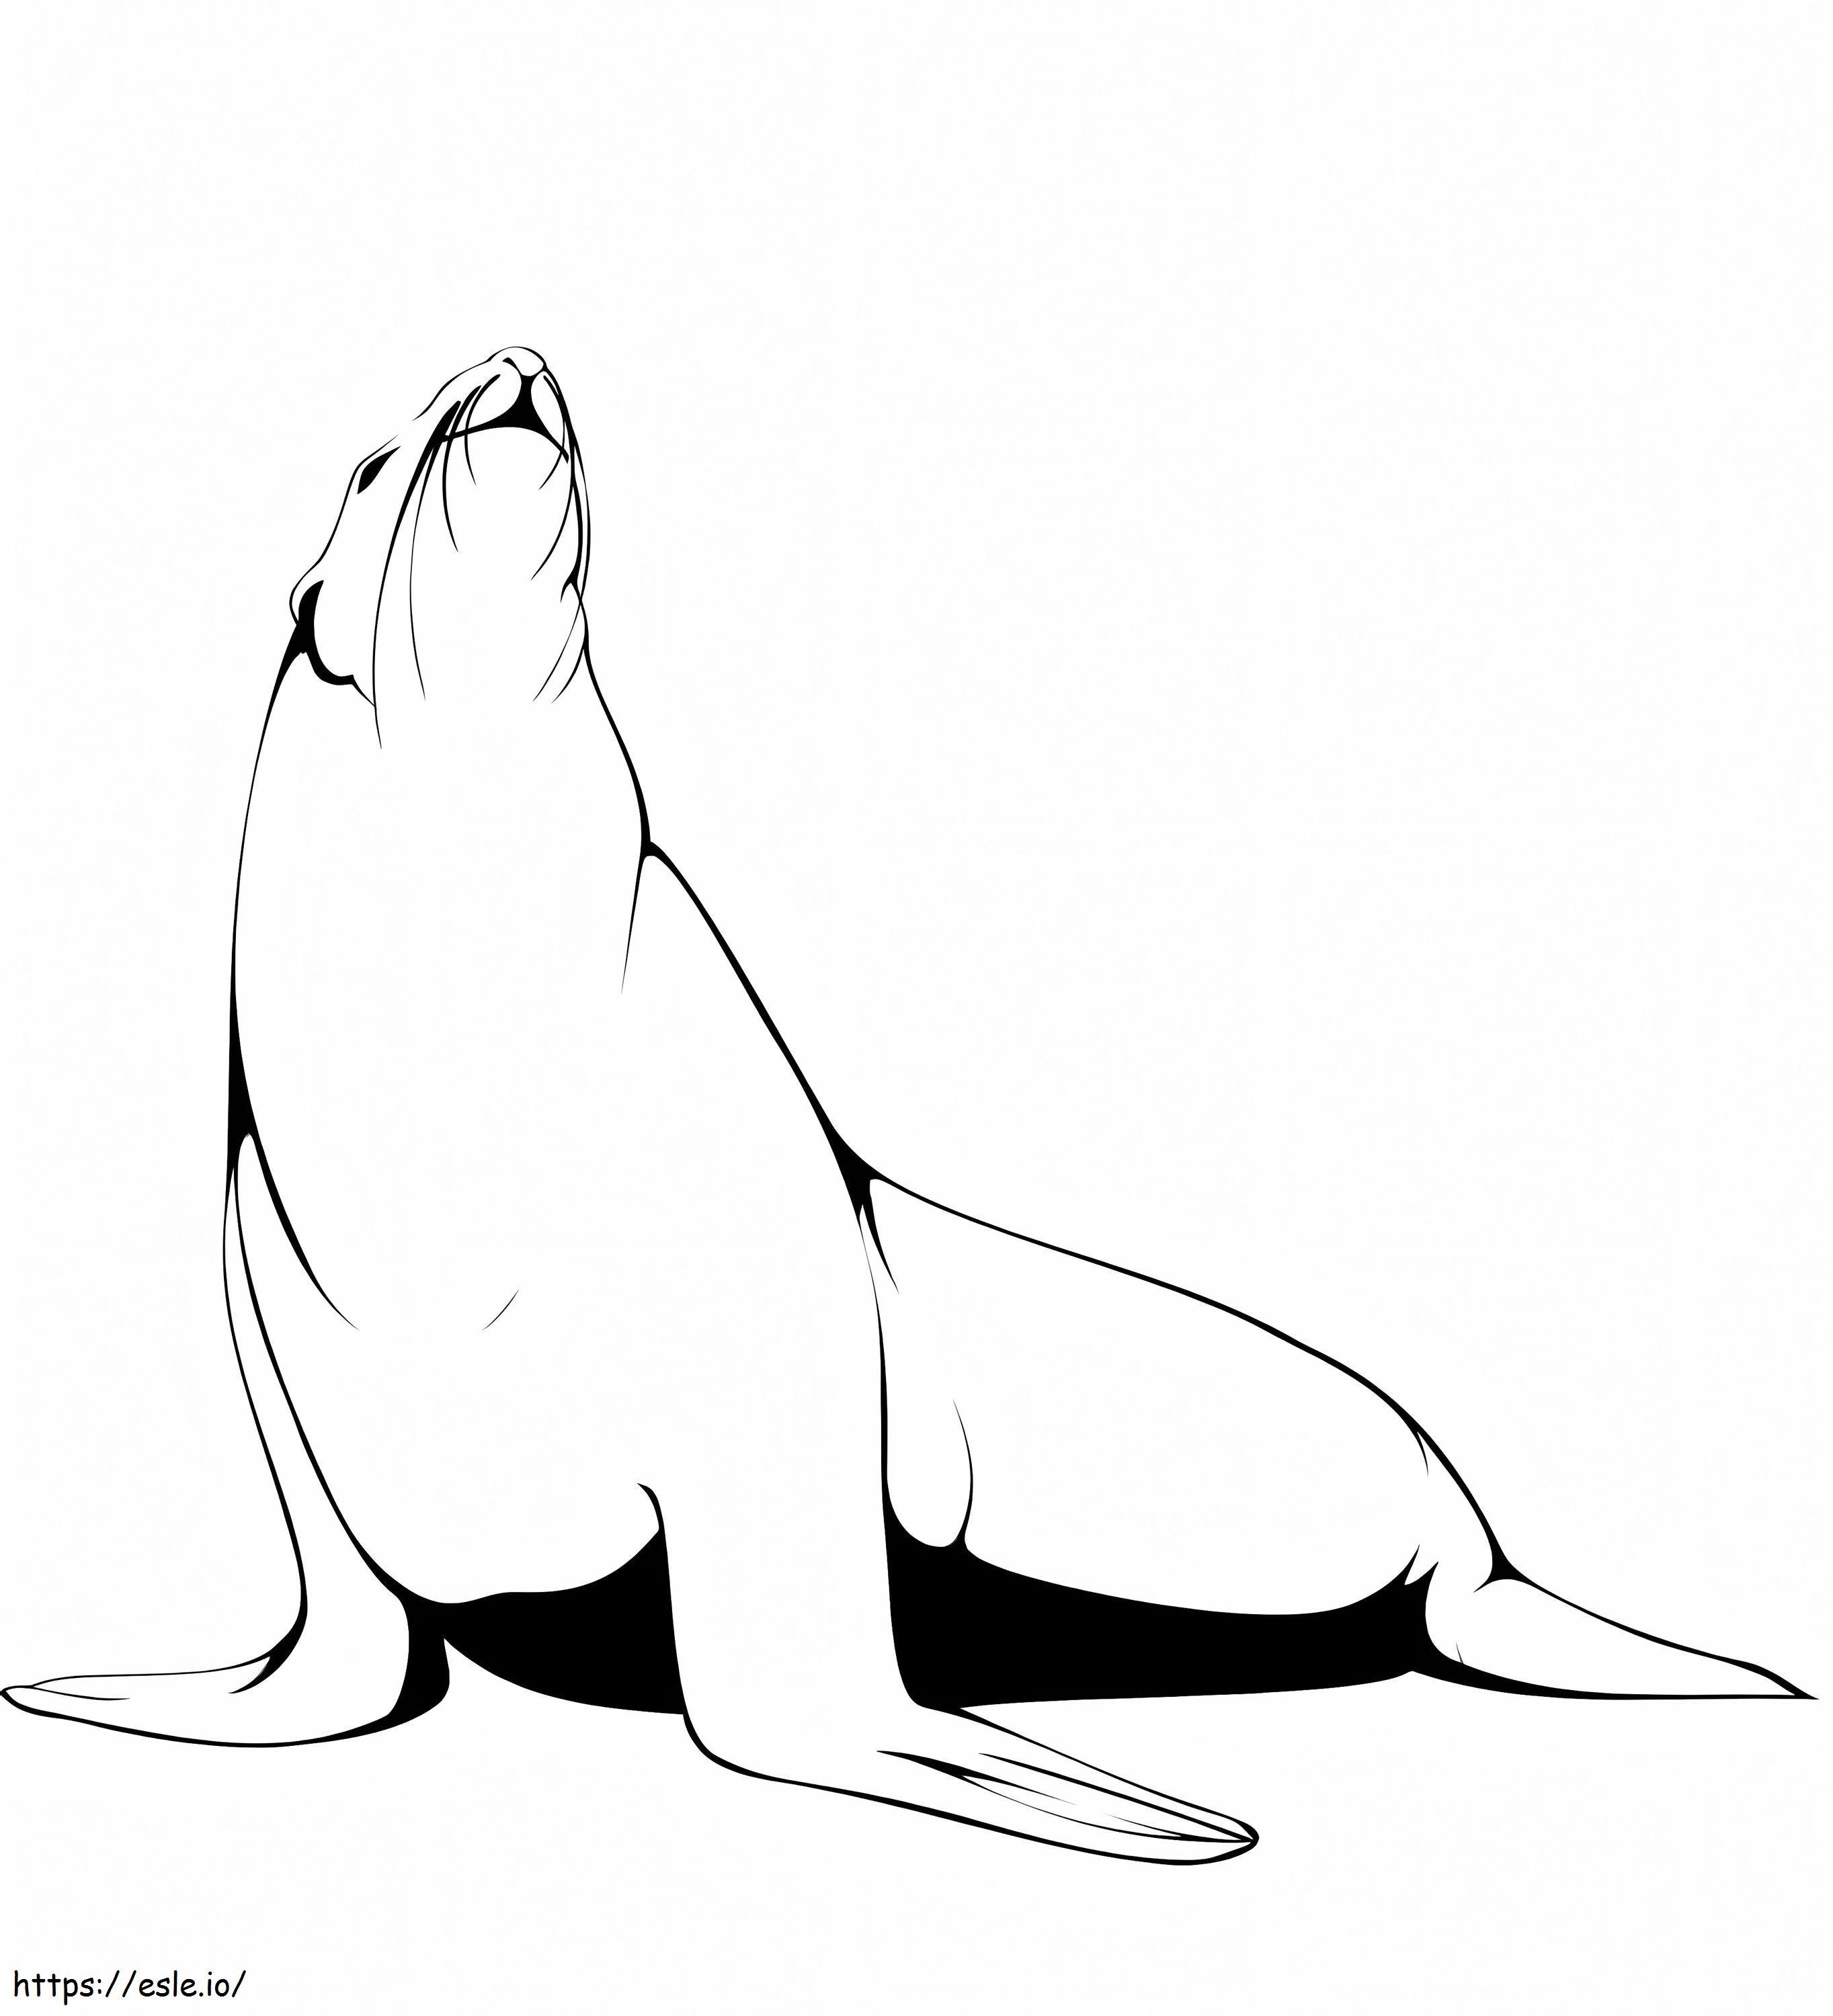 León marino normal para colorear